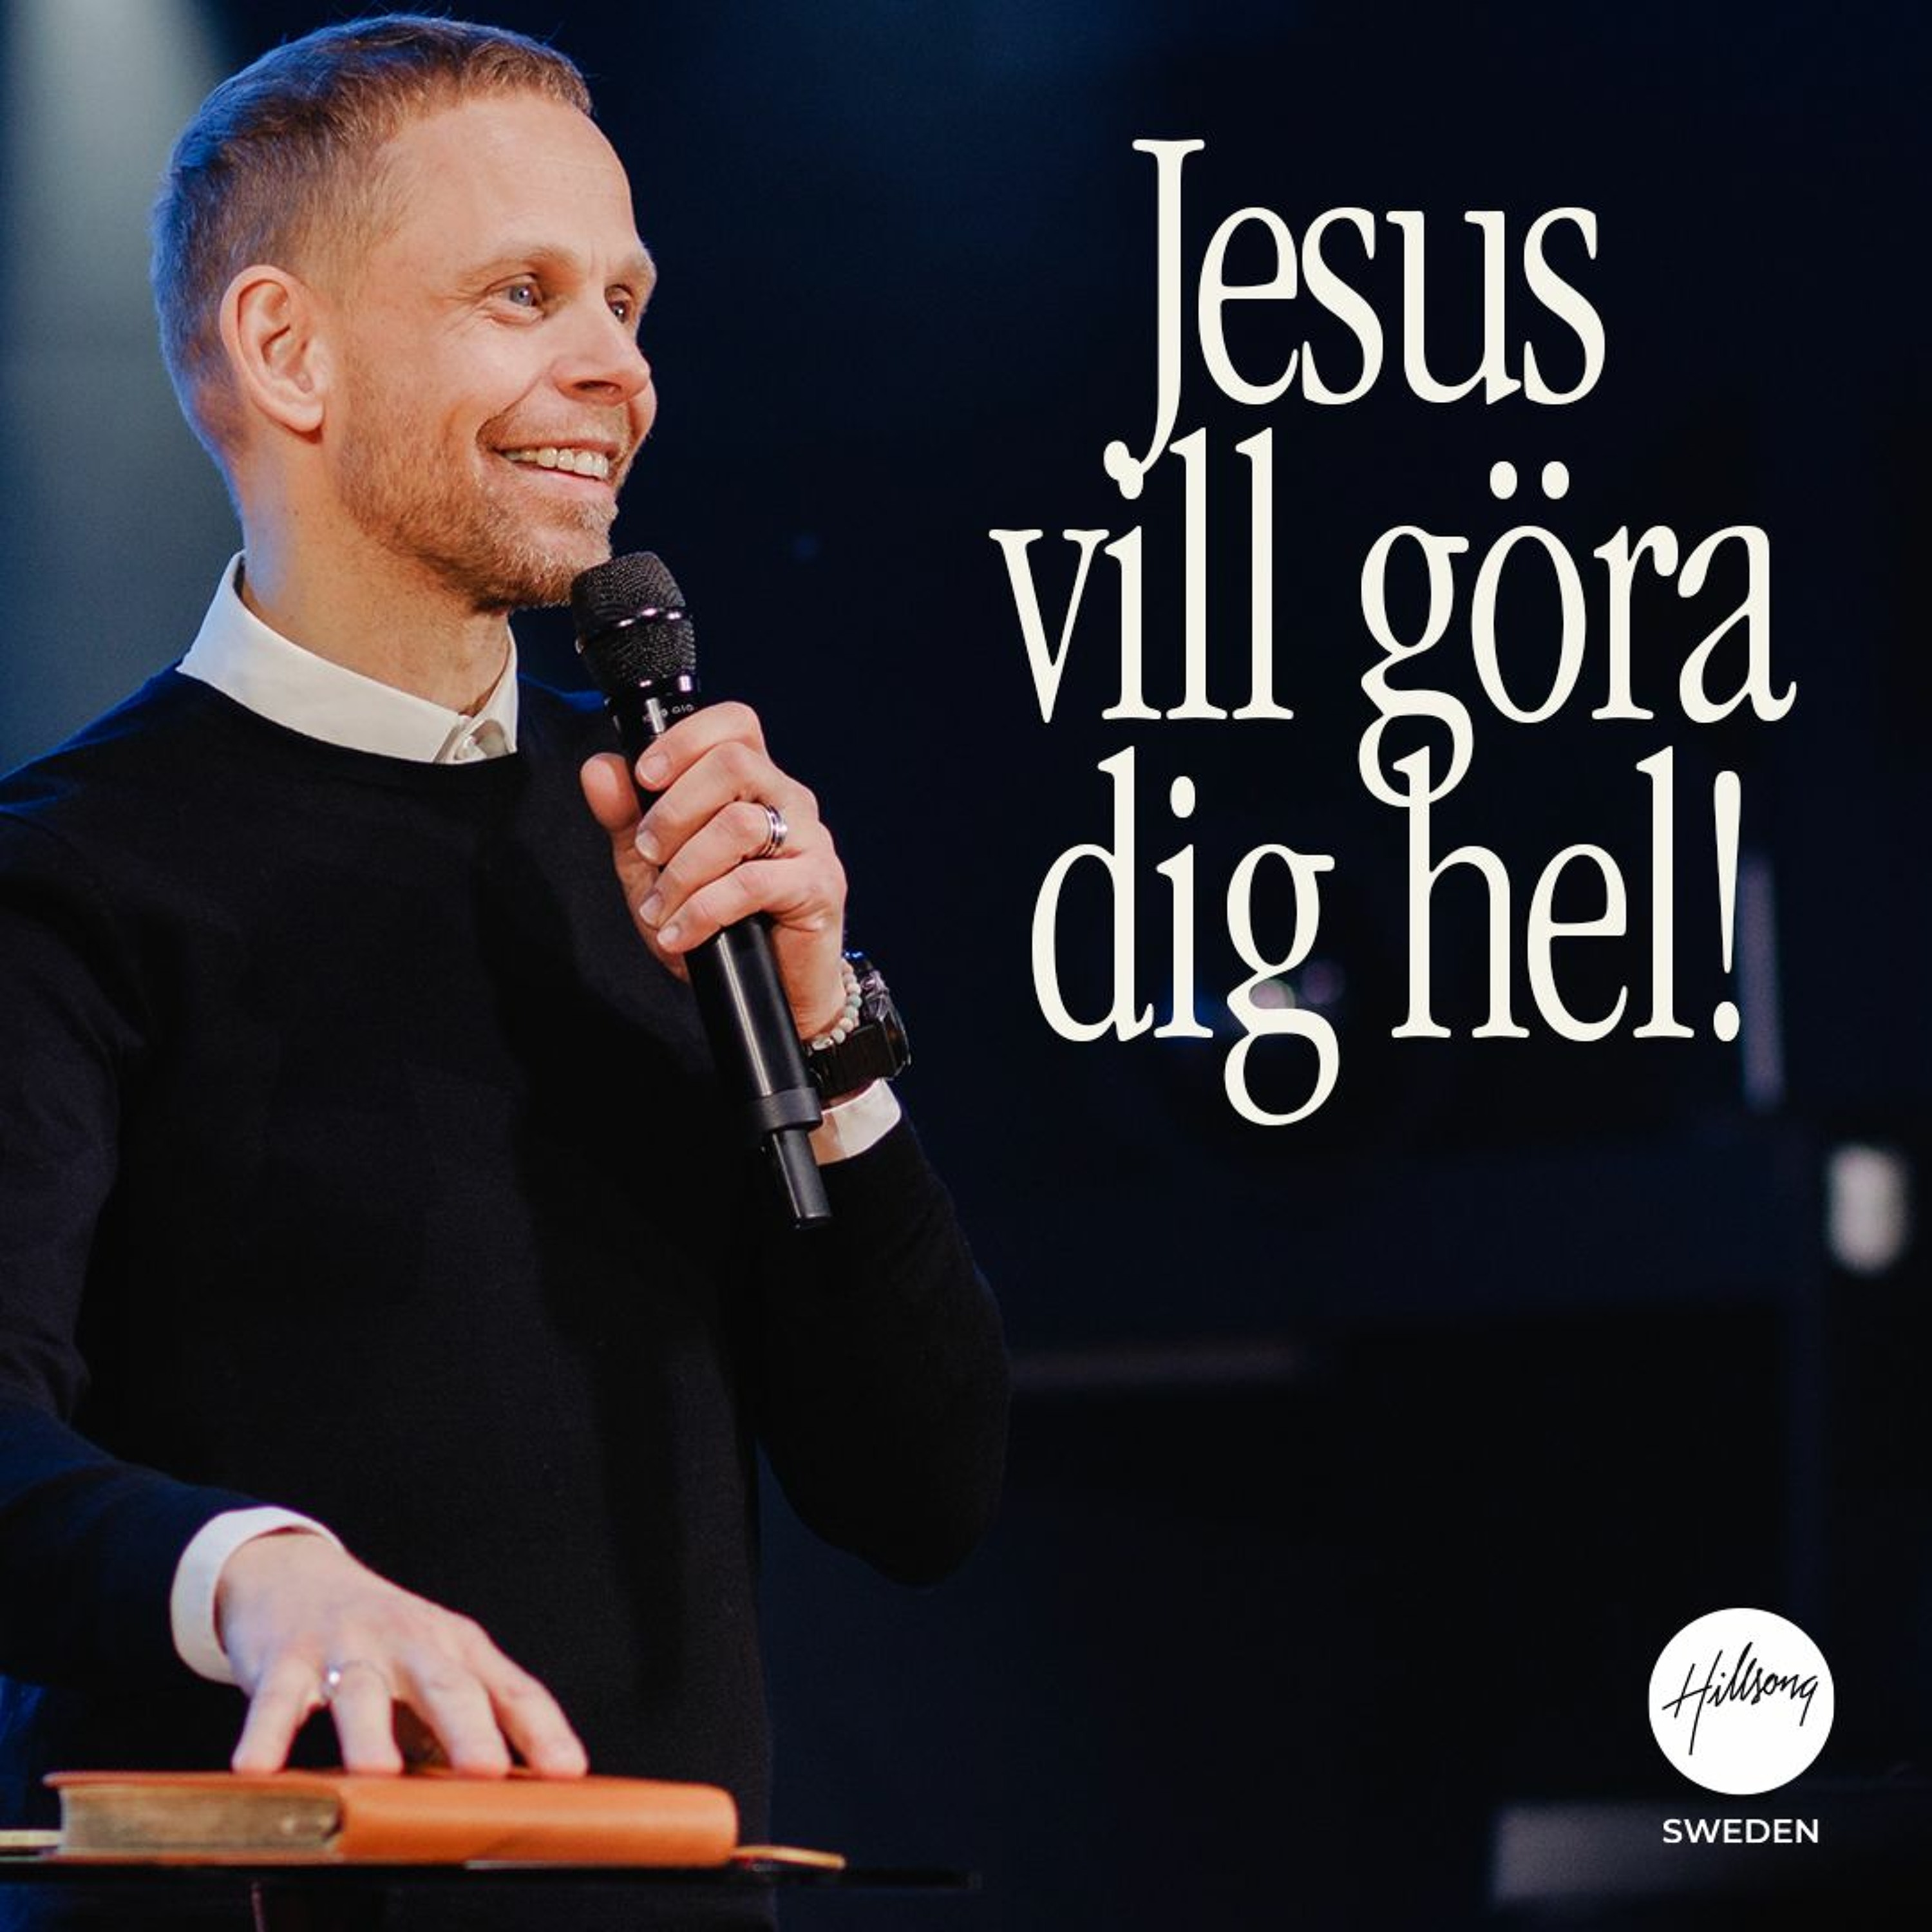 Andreas Nielsen - Jesus vill göra dig hel!